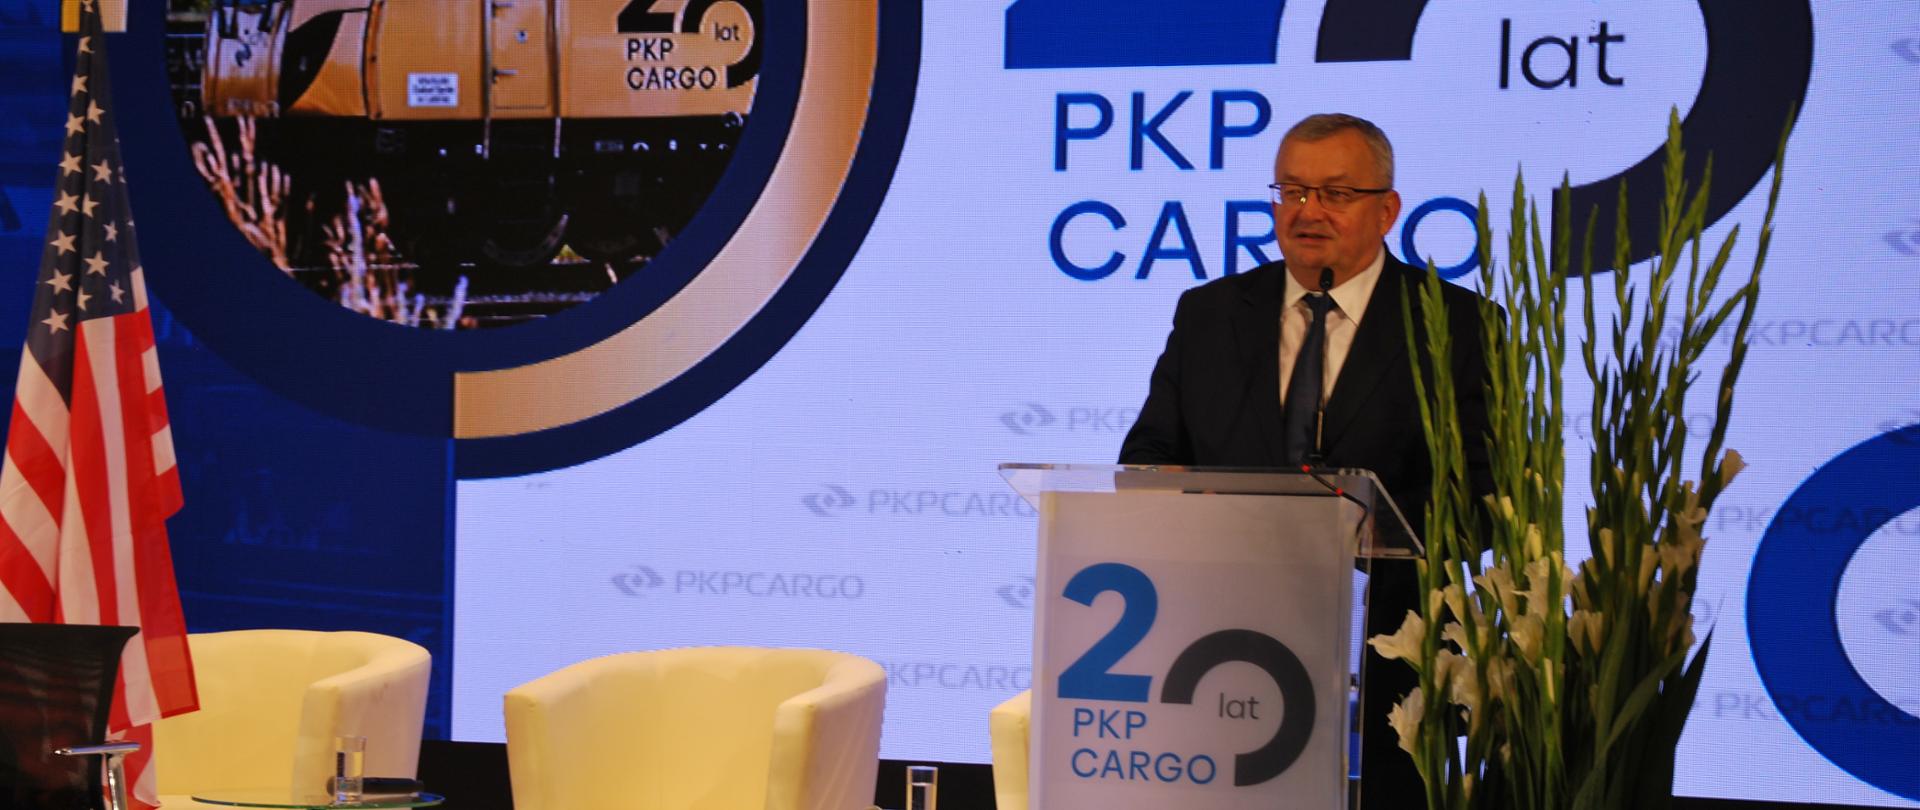 Minister infrastruktury Andrzej Adamczyk wziął udział w konferencji z okazji 20 rocznicy powstania spółki PKP Cargo